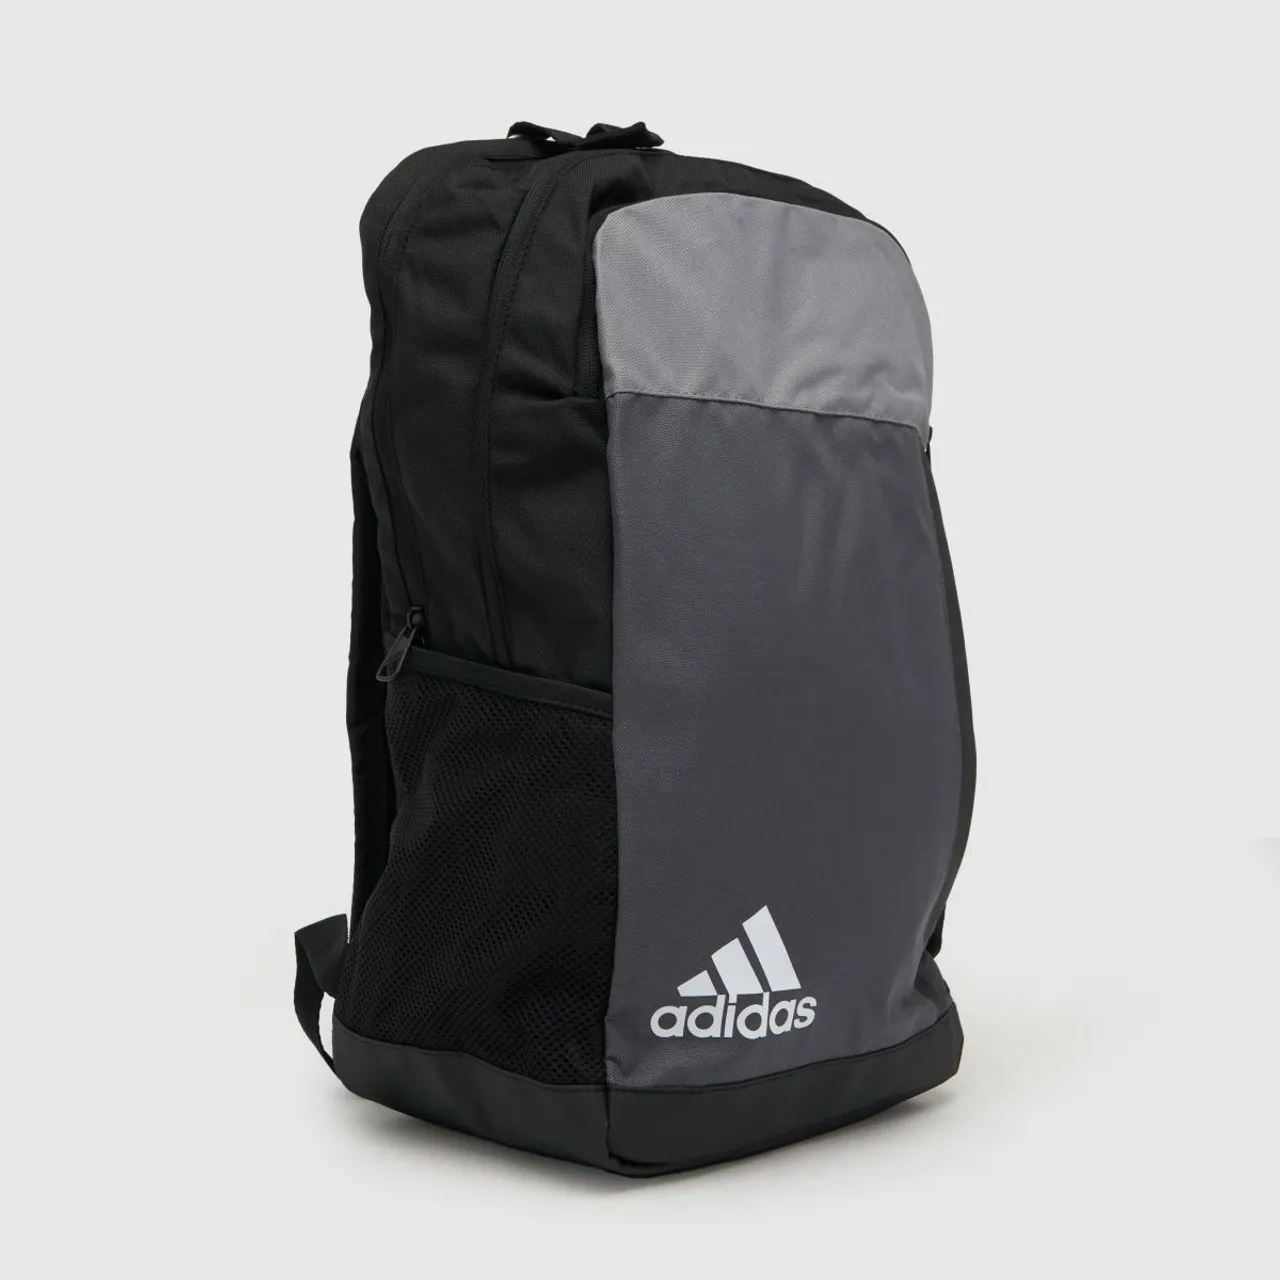 Adidas Black & Grey Motion Backpack, Size: One Size